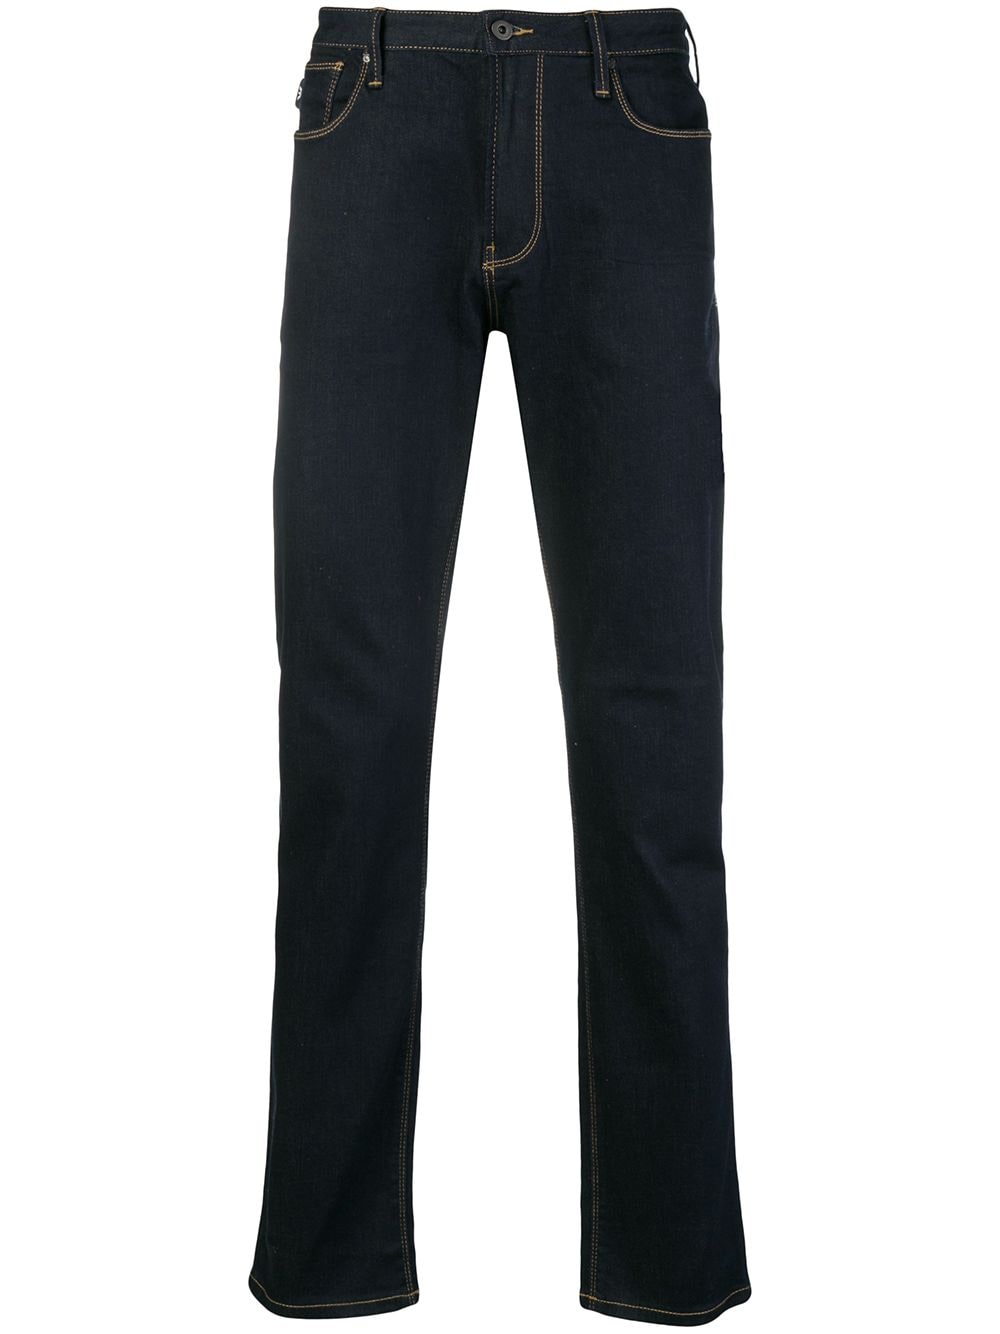 Emporio Armani classic dark jeans